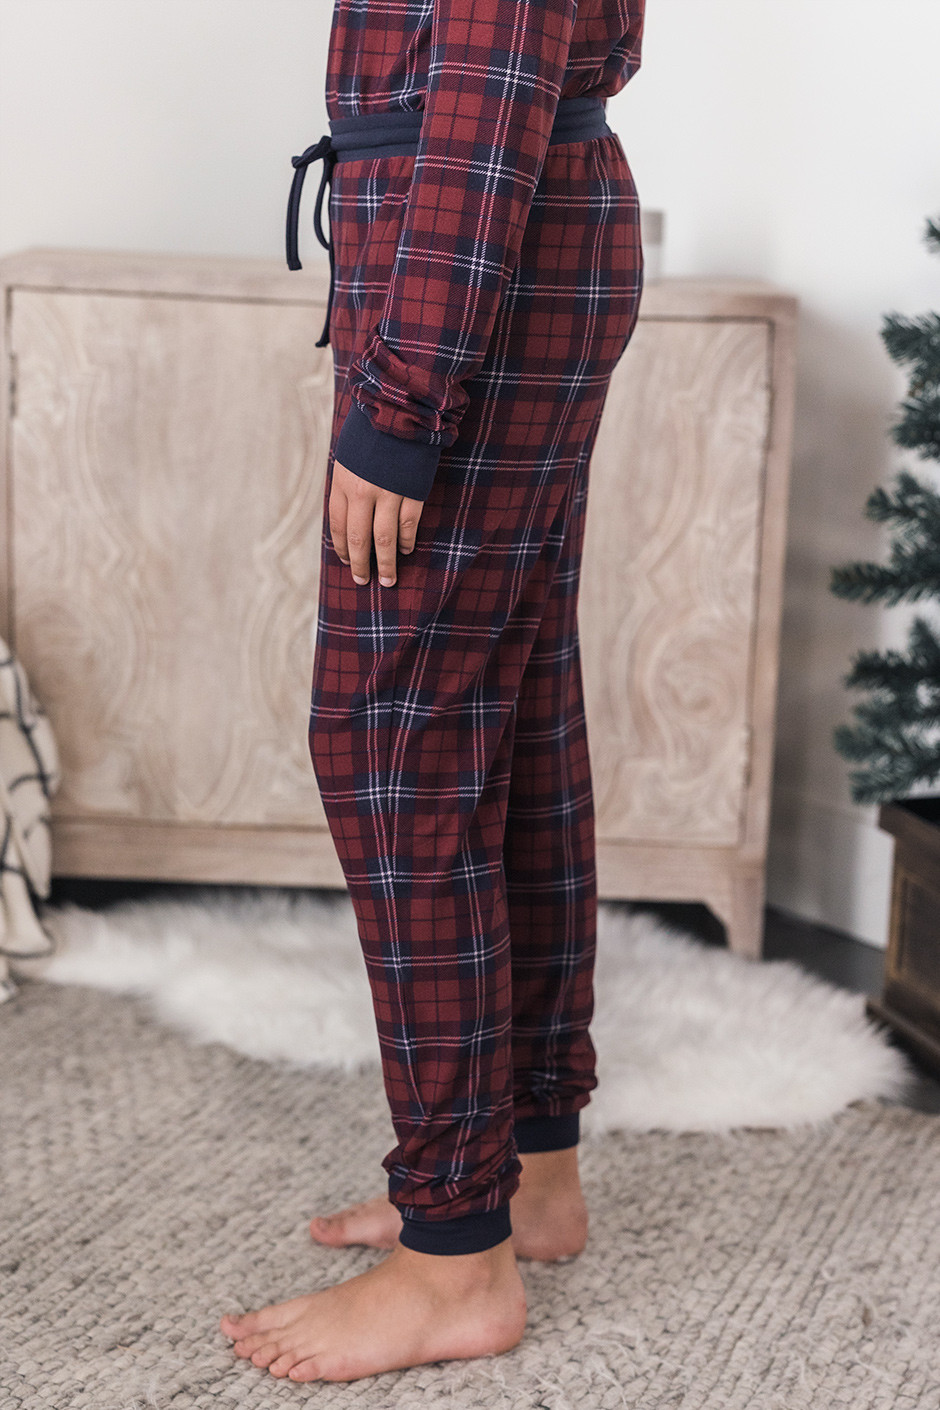 Tall Snuggle Season Pyjama Set